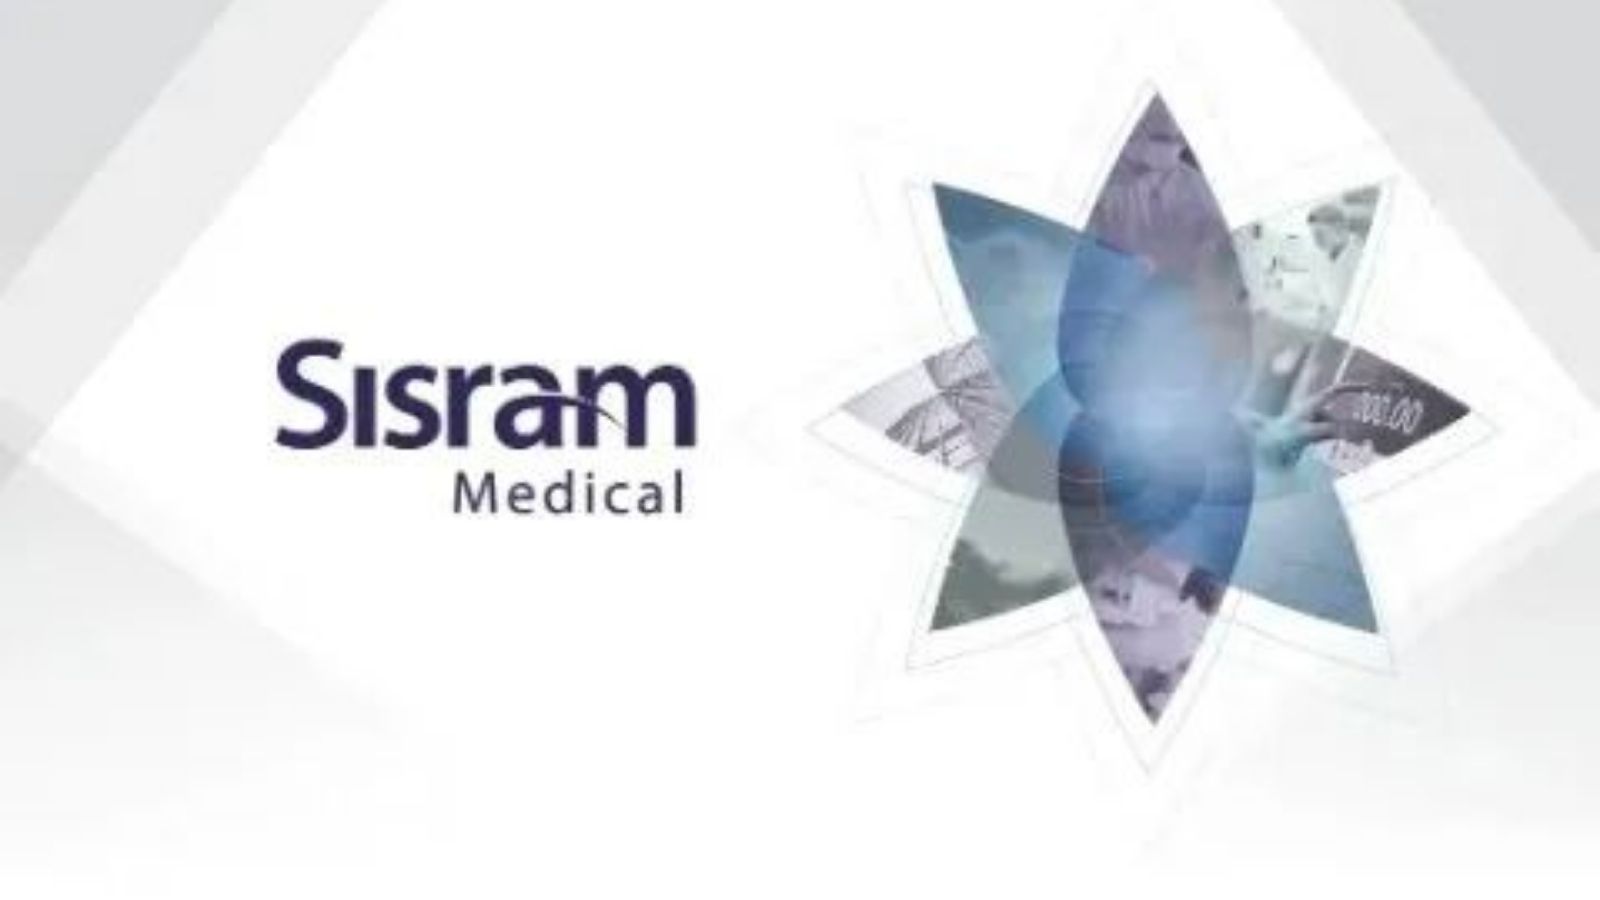 Sisram Medical，无创医疗，美容治疗